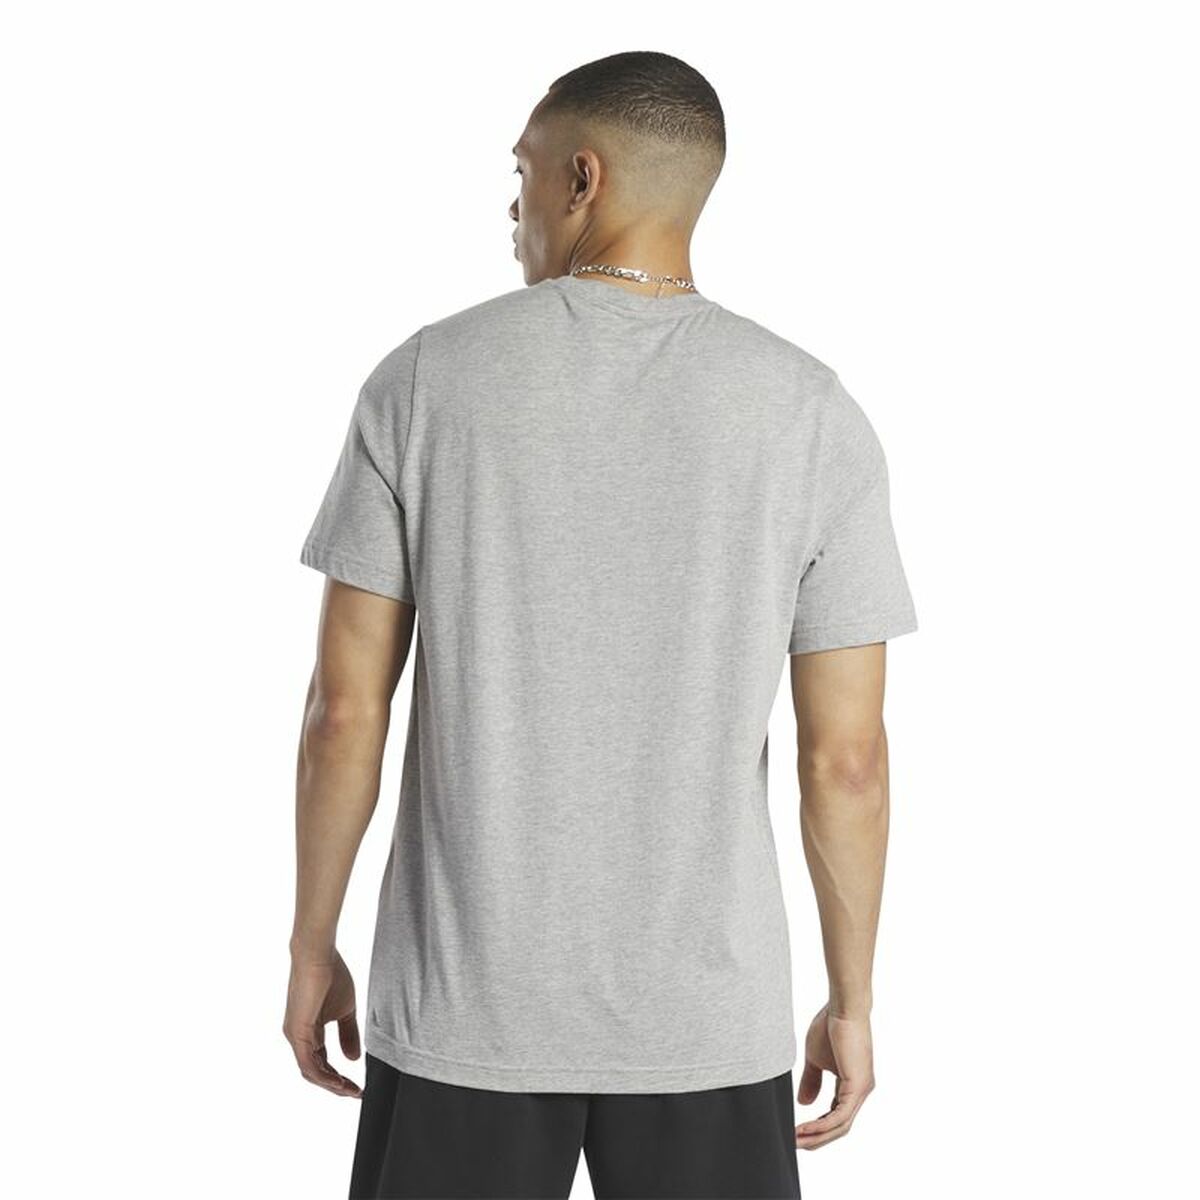 Men’s Short Sleeve T-Shirt Reebok GS Not Spectator Grey